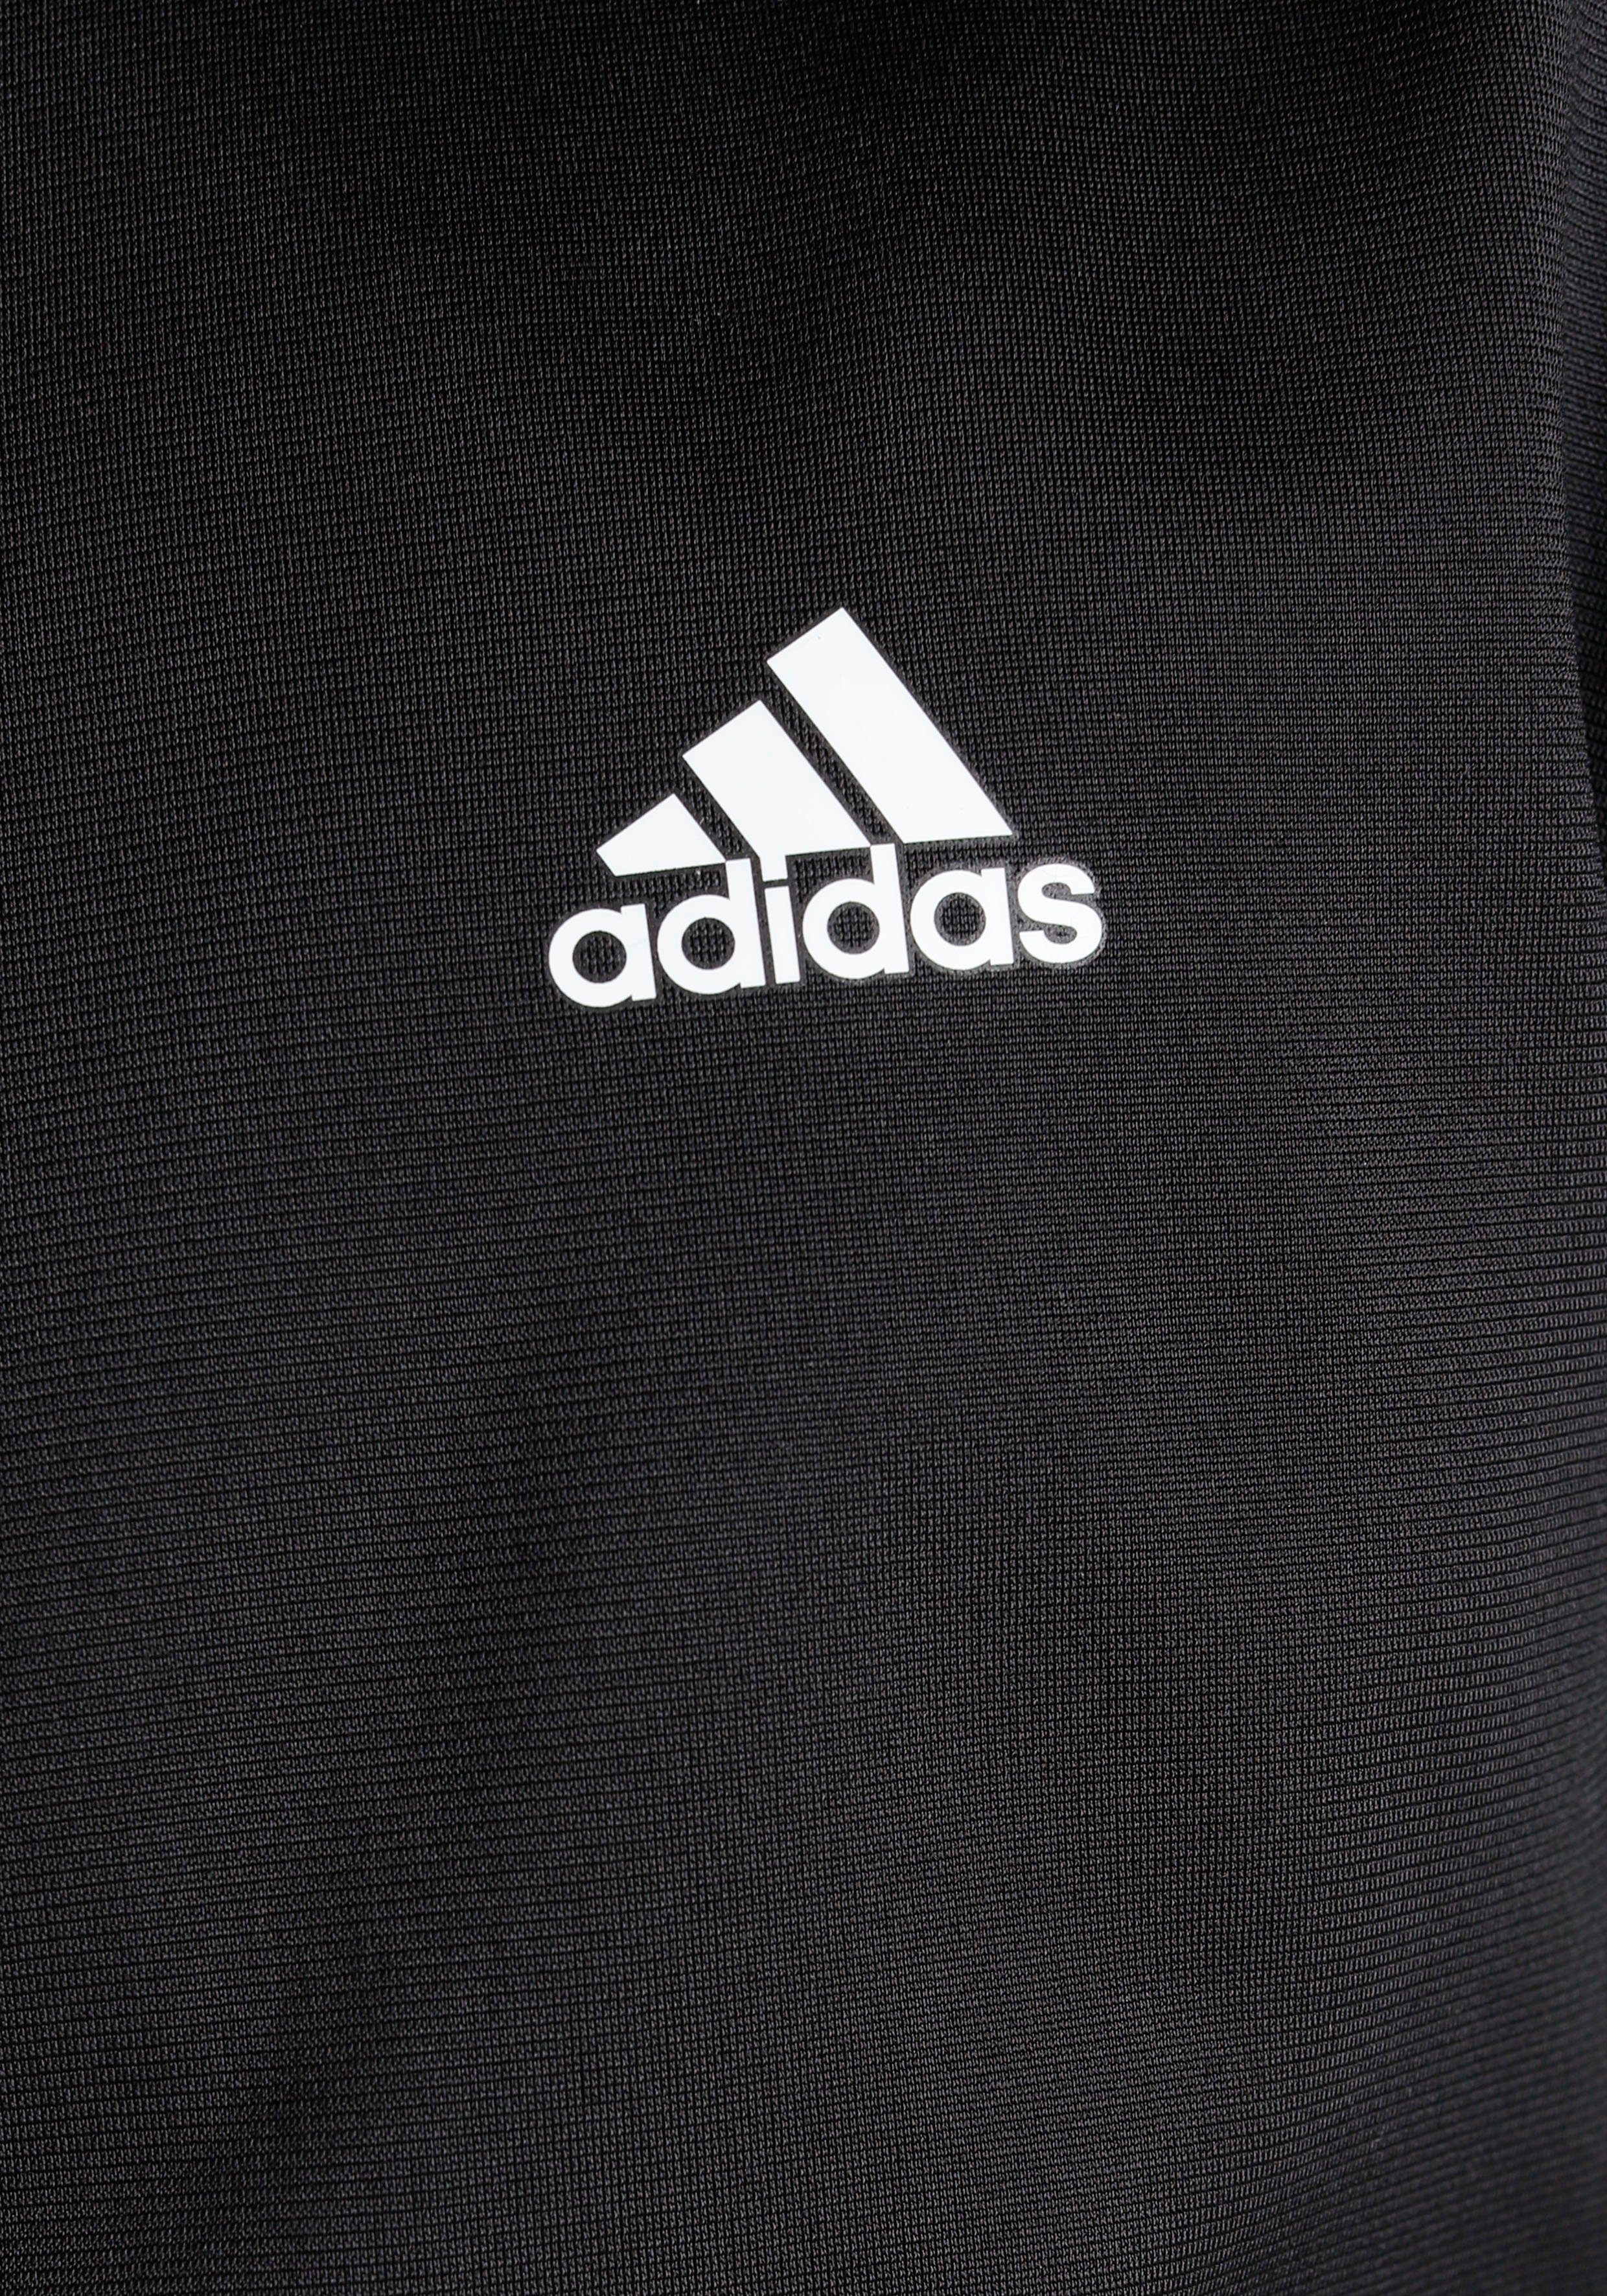 Black Trainingsanzug LOGO / adidas (2-tlg) Sportswear White ESSENTIALS BIG